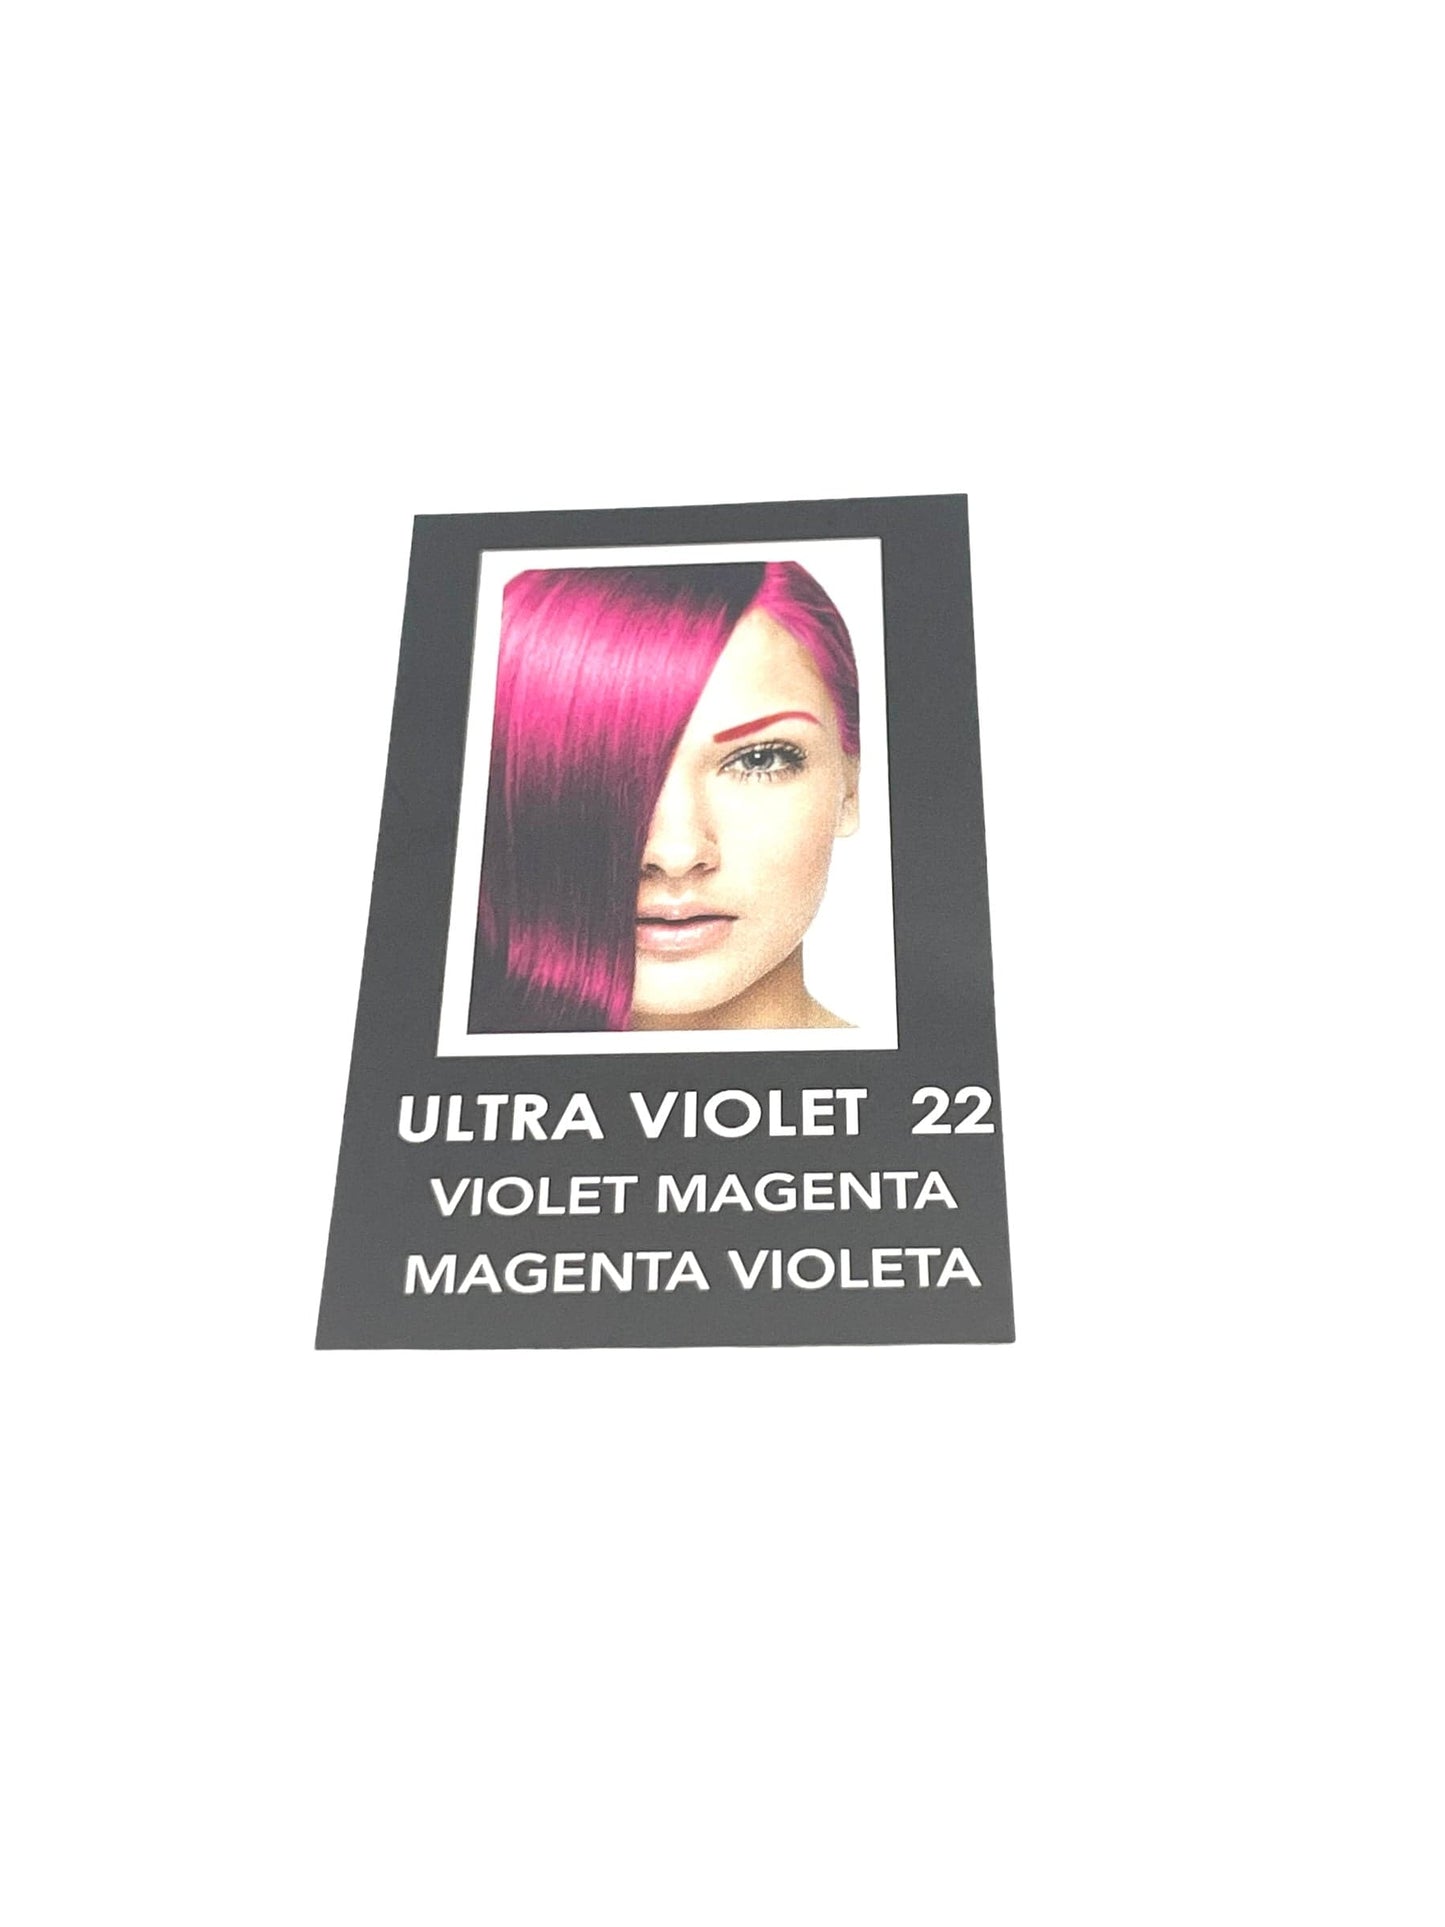 Bleach & Hair Color Lumetrix 2 in 1 Bleaches & Colors  Lift & Deposit 2.7 oz Bleach